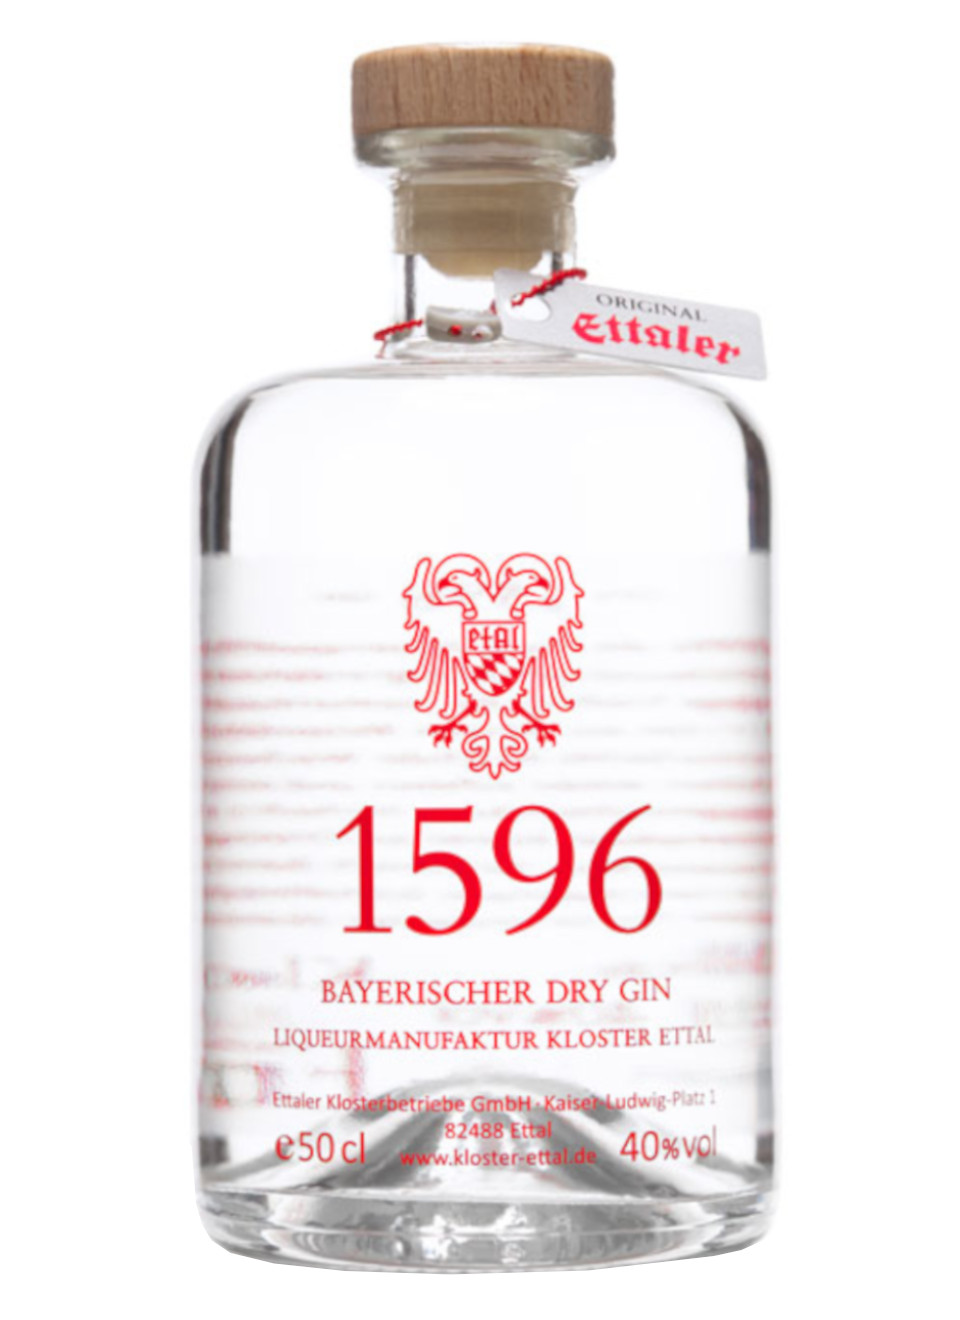 Ettaler Gin 1596 0,5 L günstig kaufen | Spirituosenworld.de - Online Shop  für Spirituosen und Barzubehör